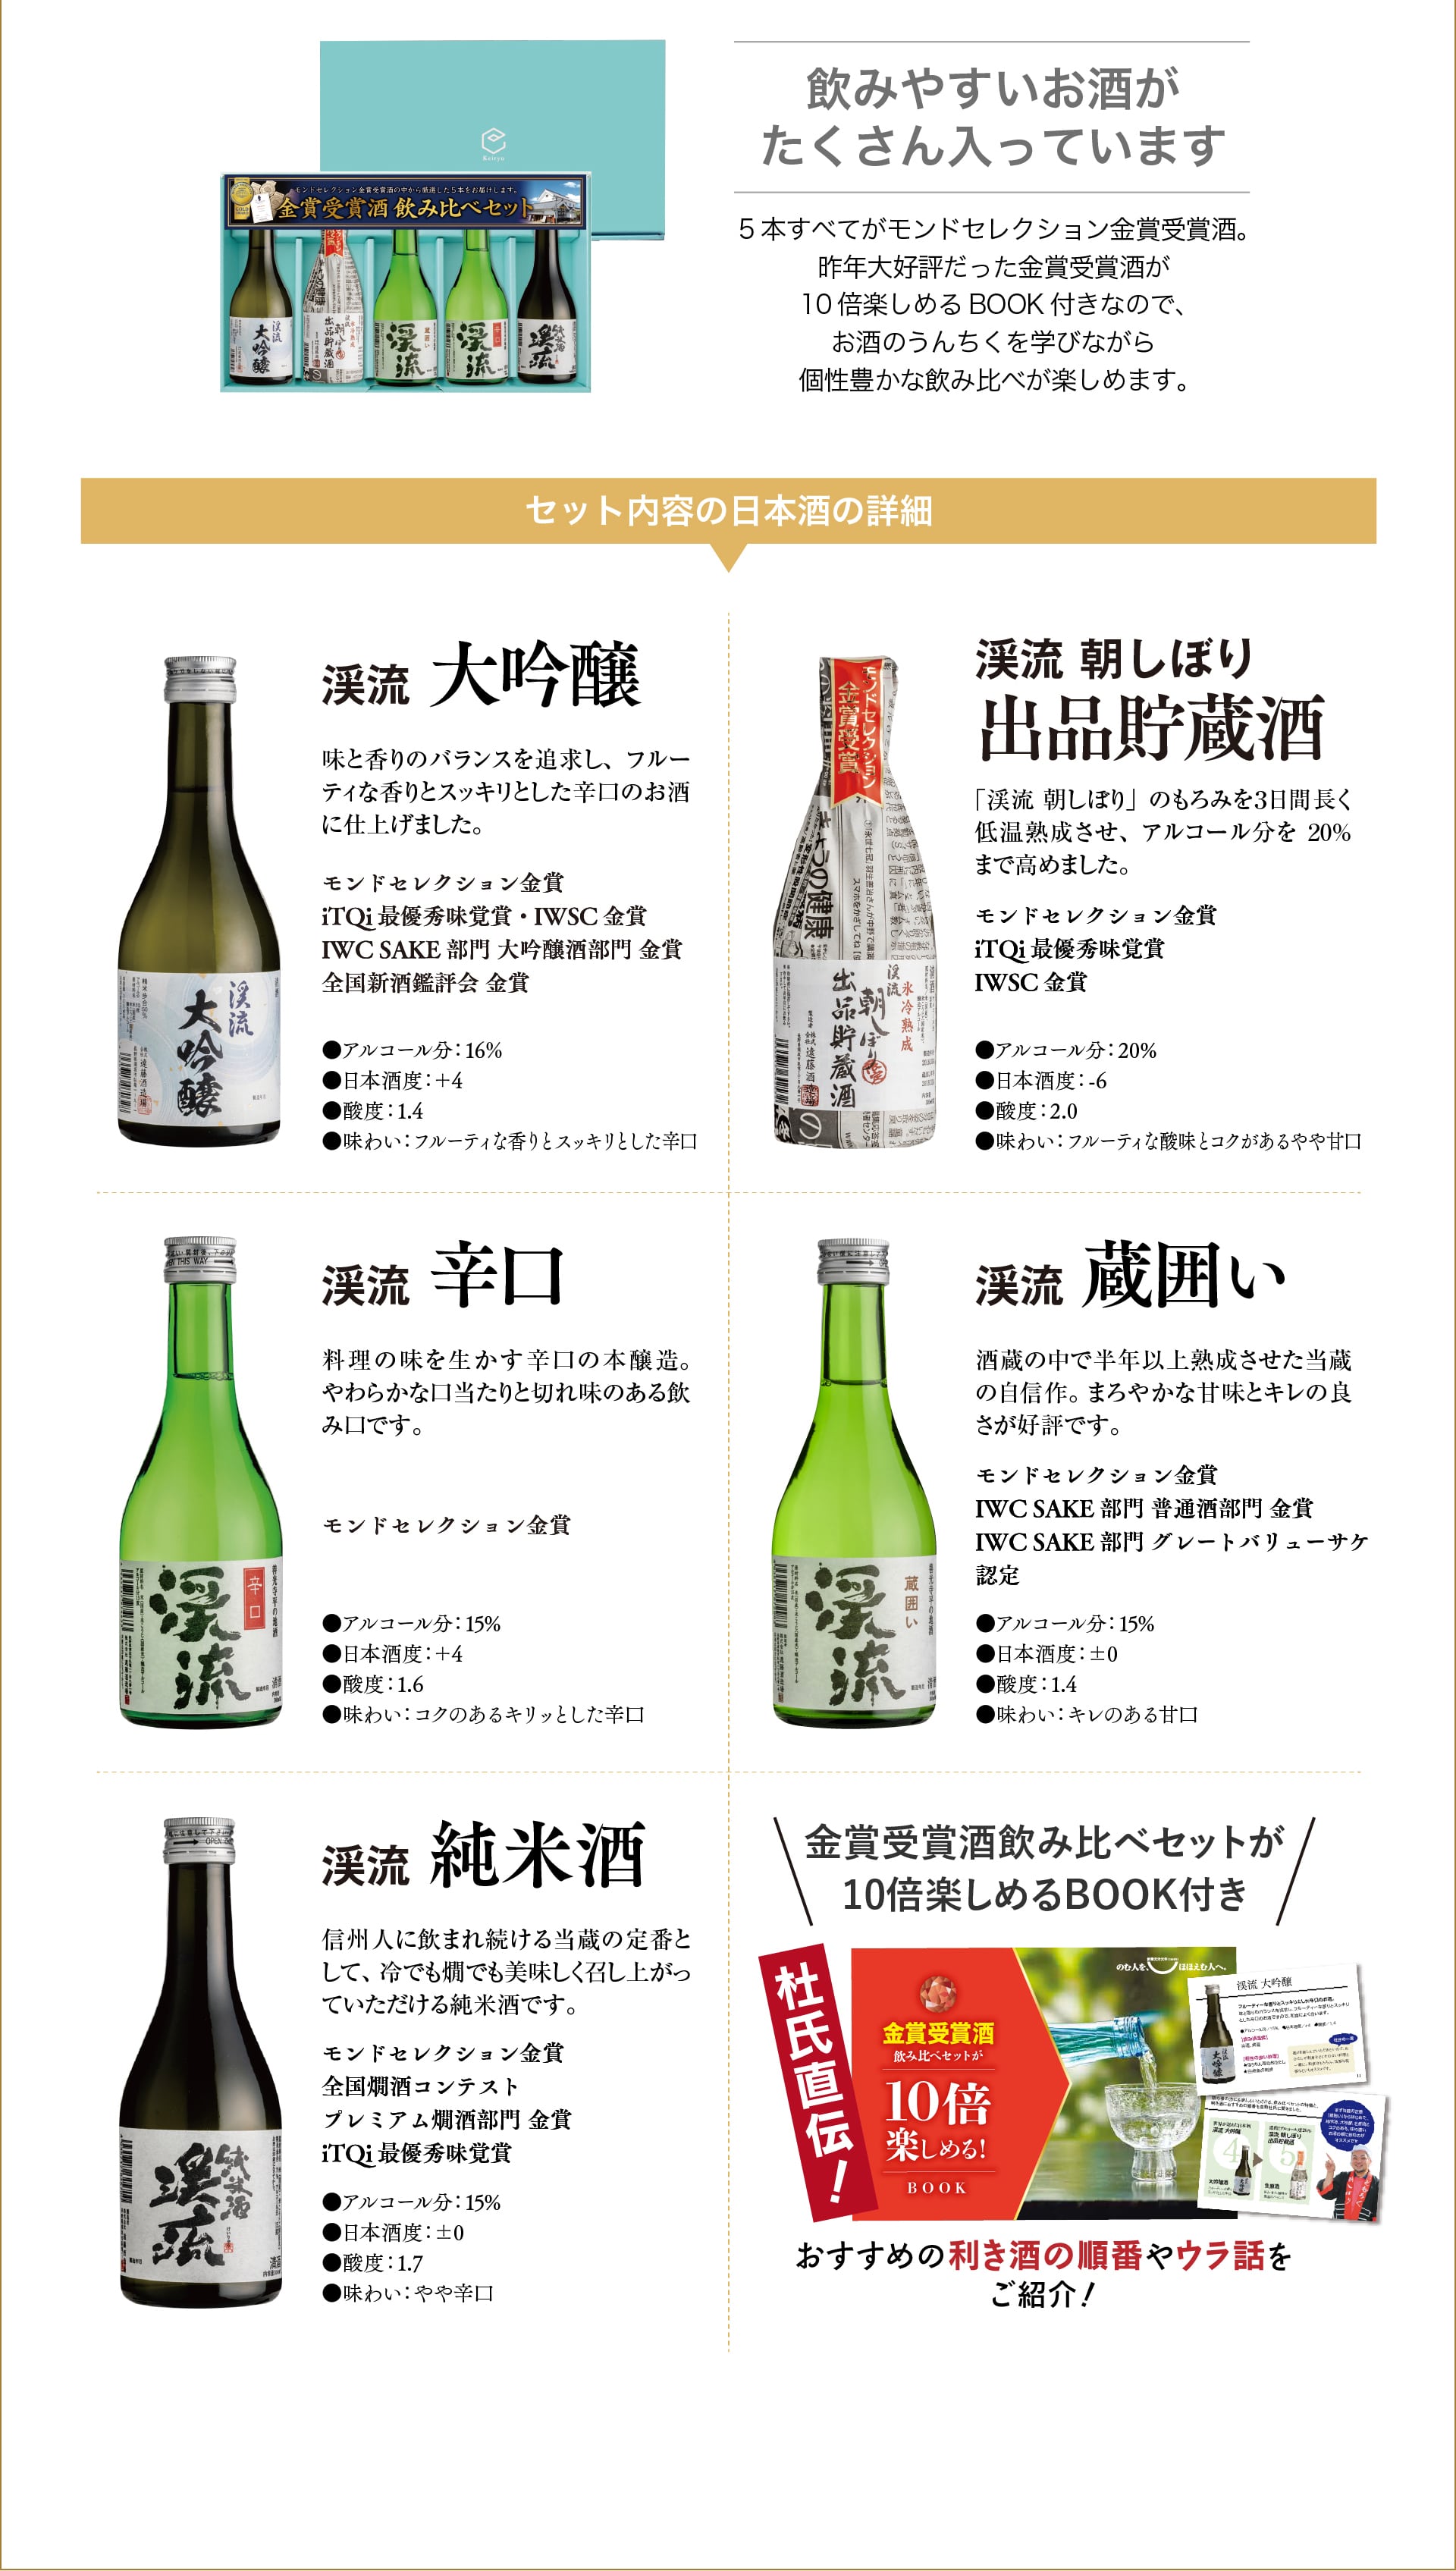 セット内容の日本酒の詳細